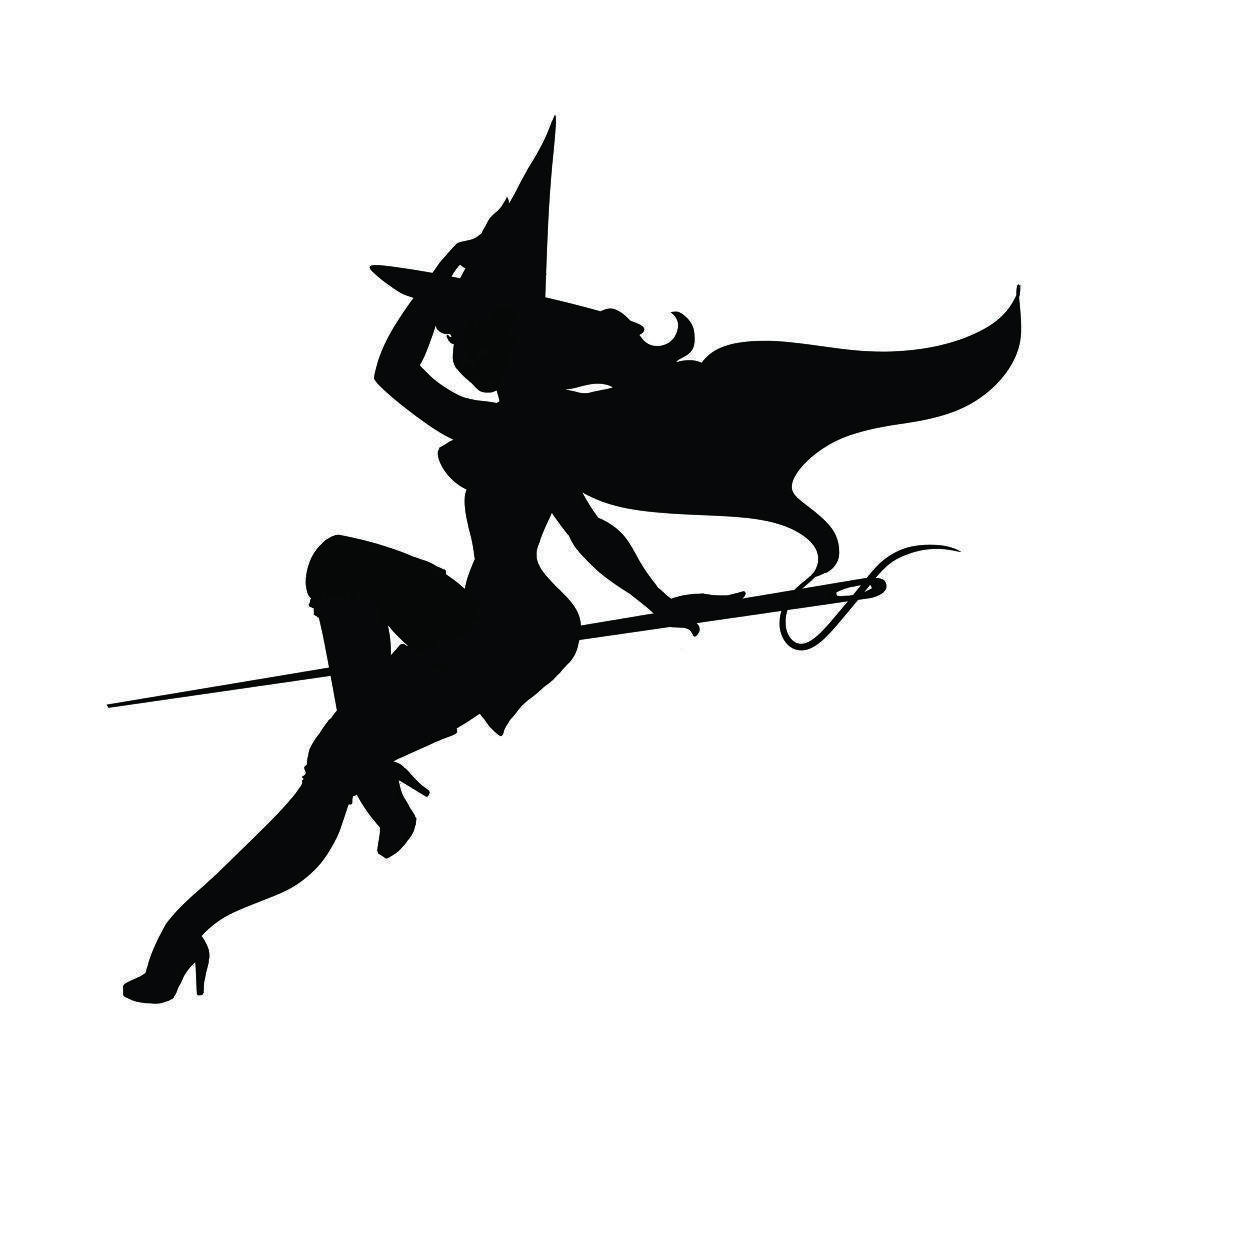 W.I.t.c.h. Logo - The Stitch Witch Logo Makes Art